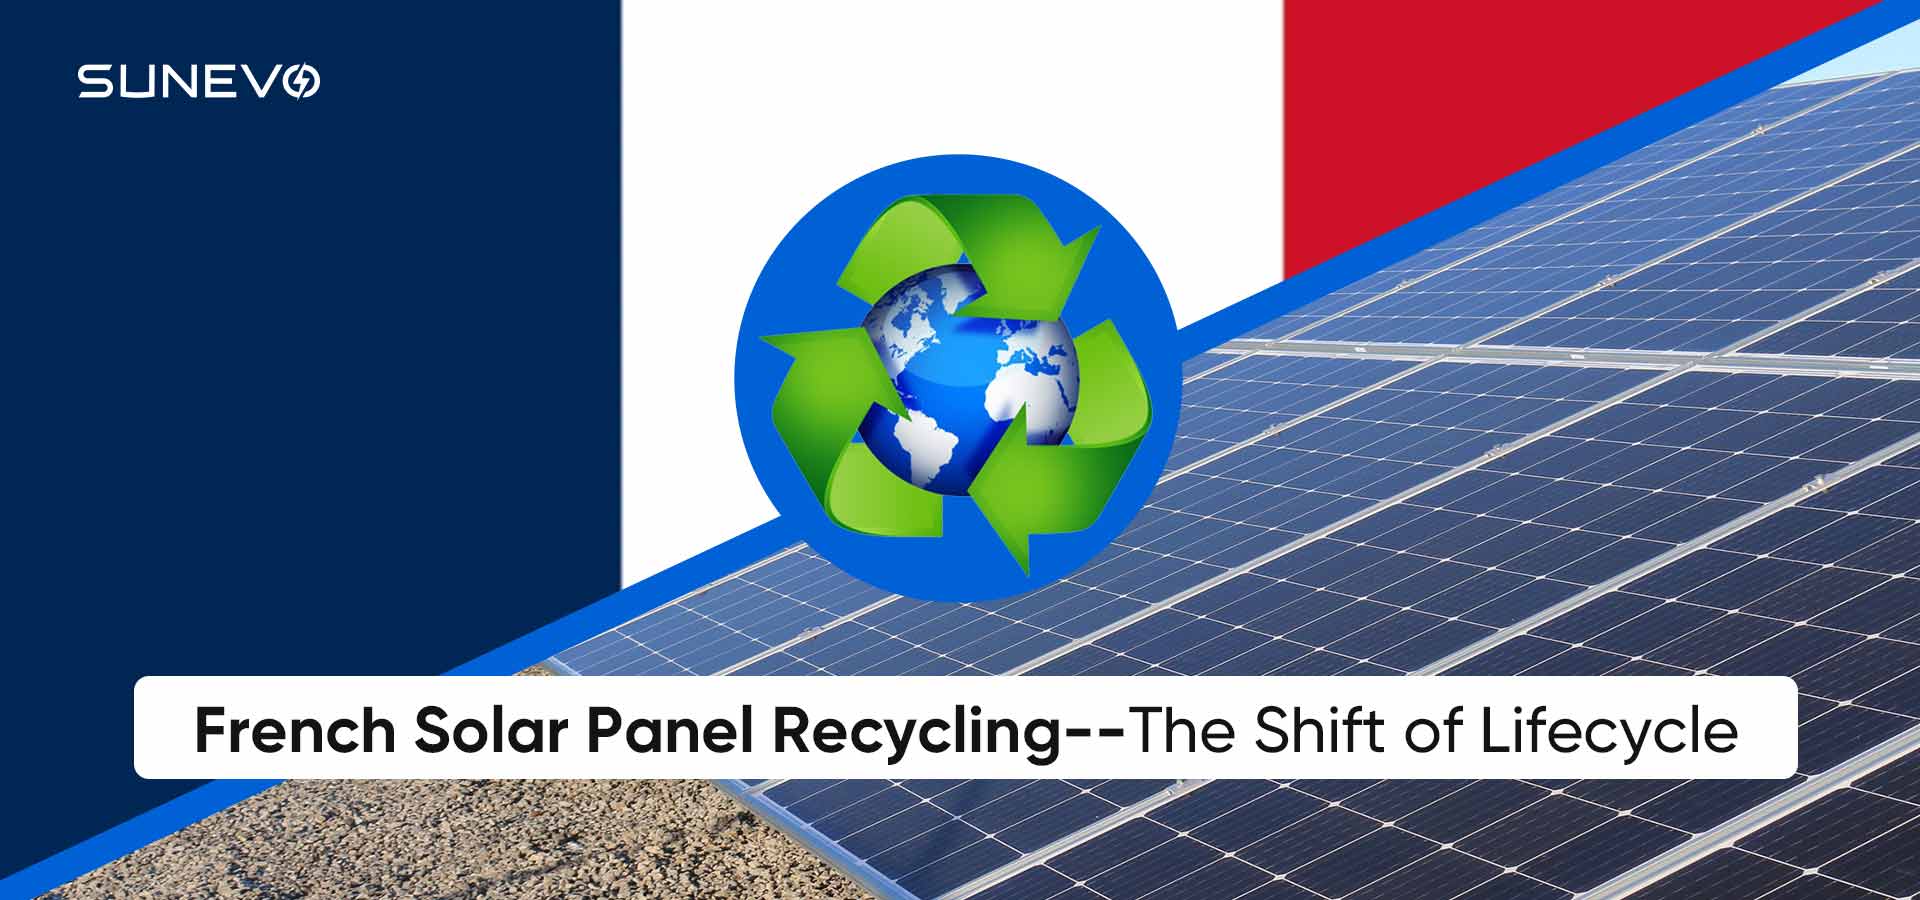 Recyclage des panneaux solaires français : un changement de cycle de vie